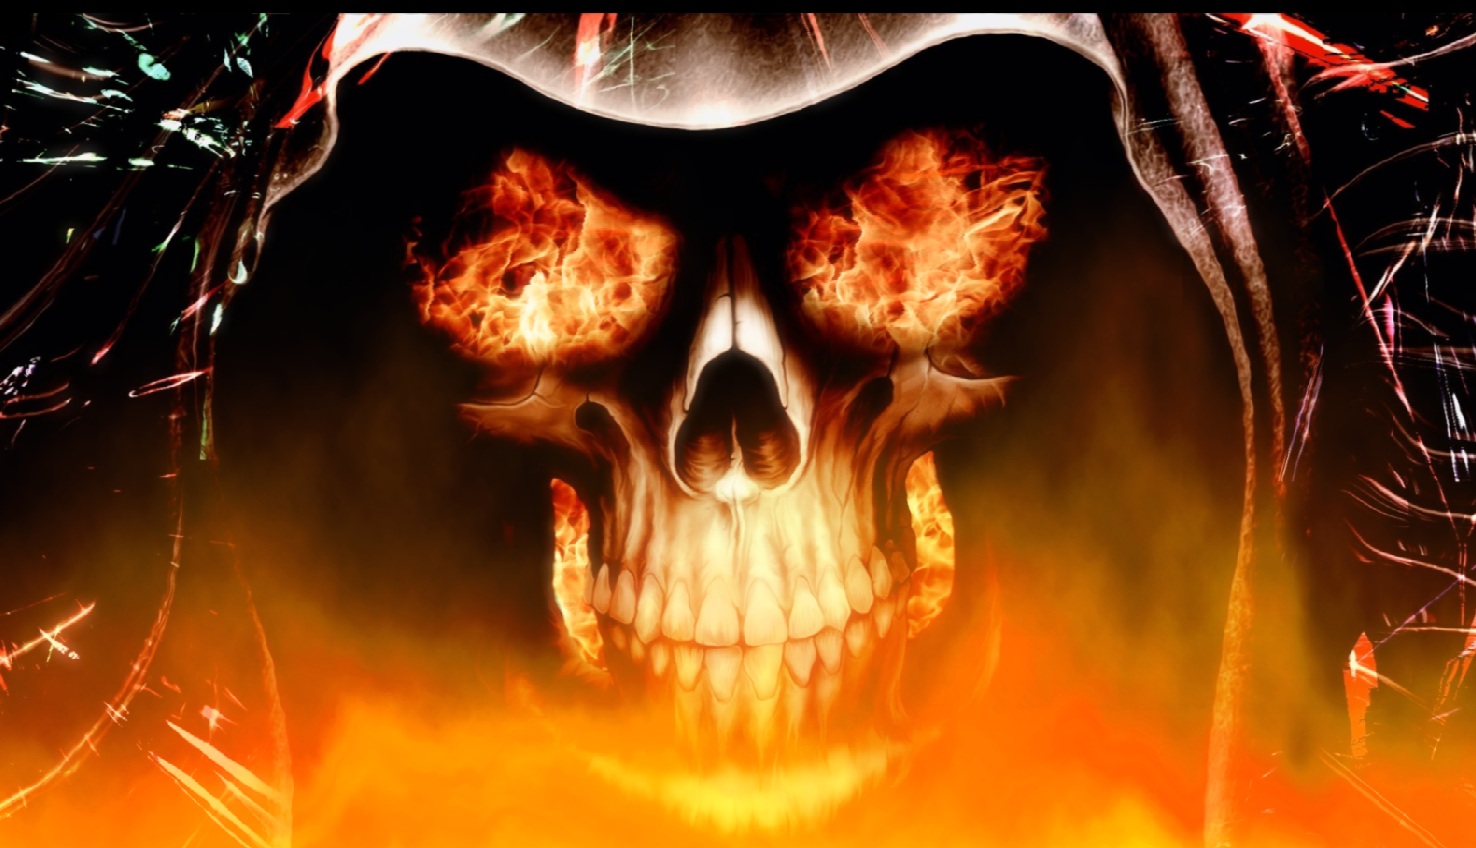 Download Fire Skull Animated Wallpaper DesktopAnimatedcom